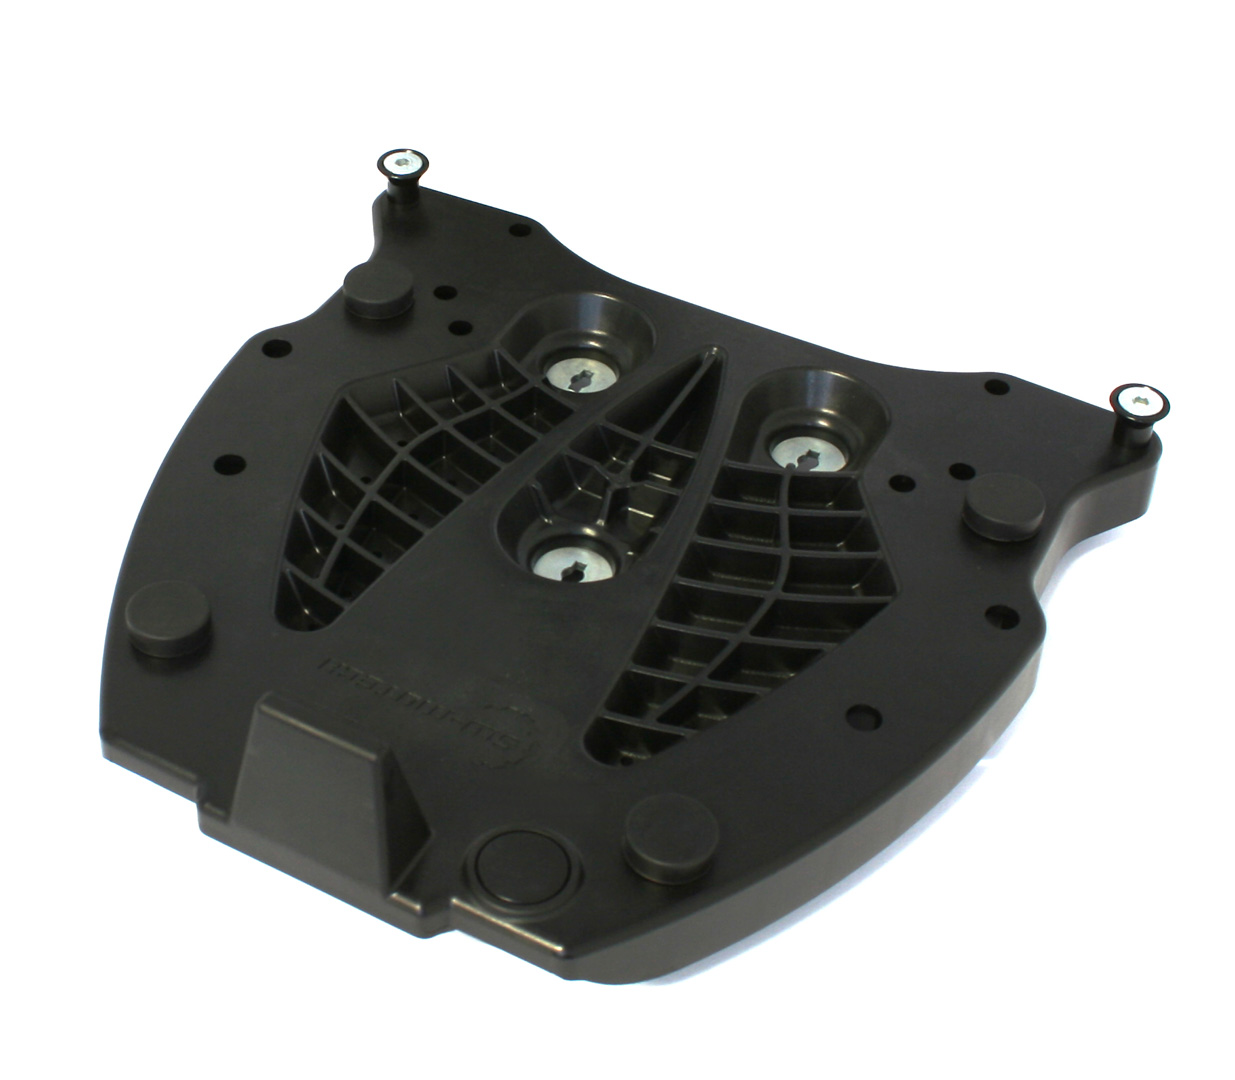 Adapter plate for ALU-RACK For Givi/Kappa Monokey. Black.